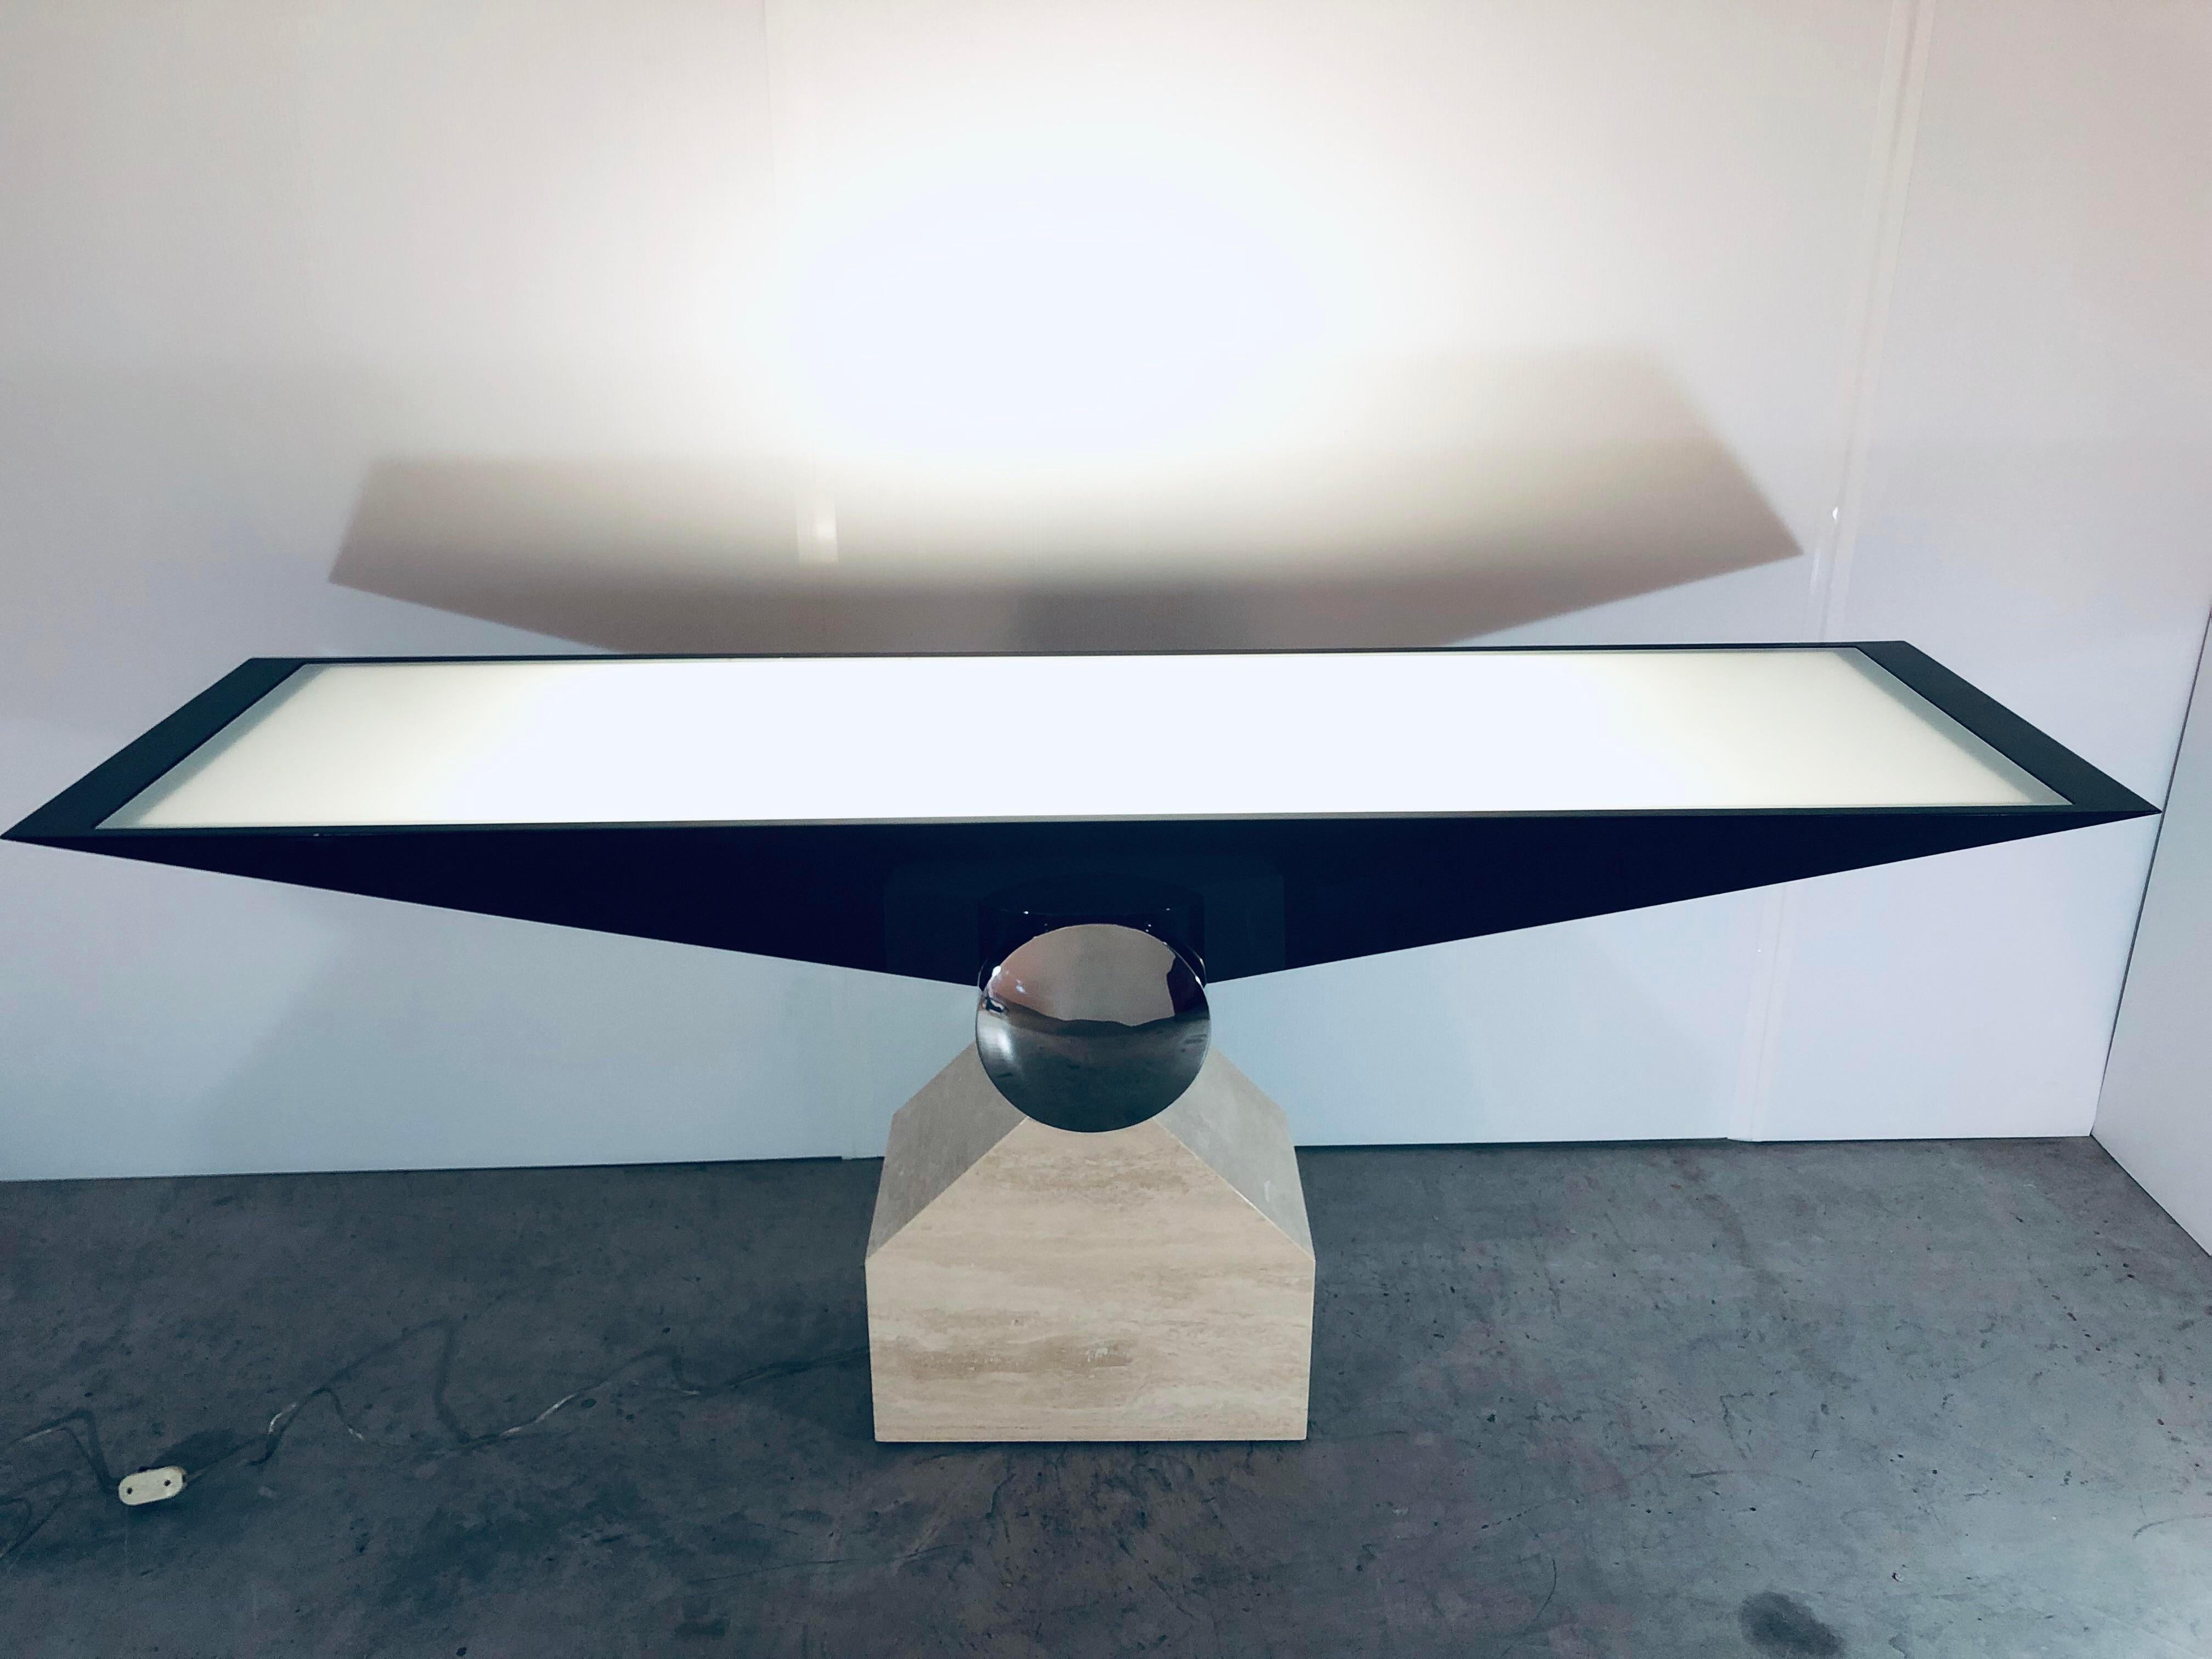 Rare table console postmoderne conçue par J. Wade Beam pour Brueton. Le sommet de la pyramide inversée est en bois laqué noir avec un insert en verre sablé qui repose sur un cylindre en acier inoxydable relié à une base en travertin. La console